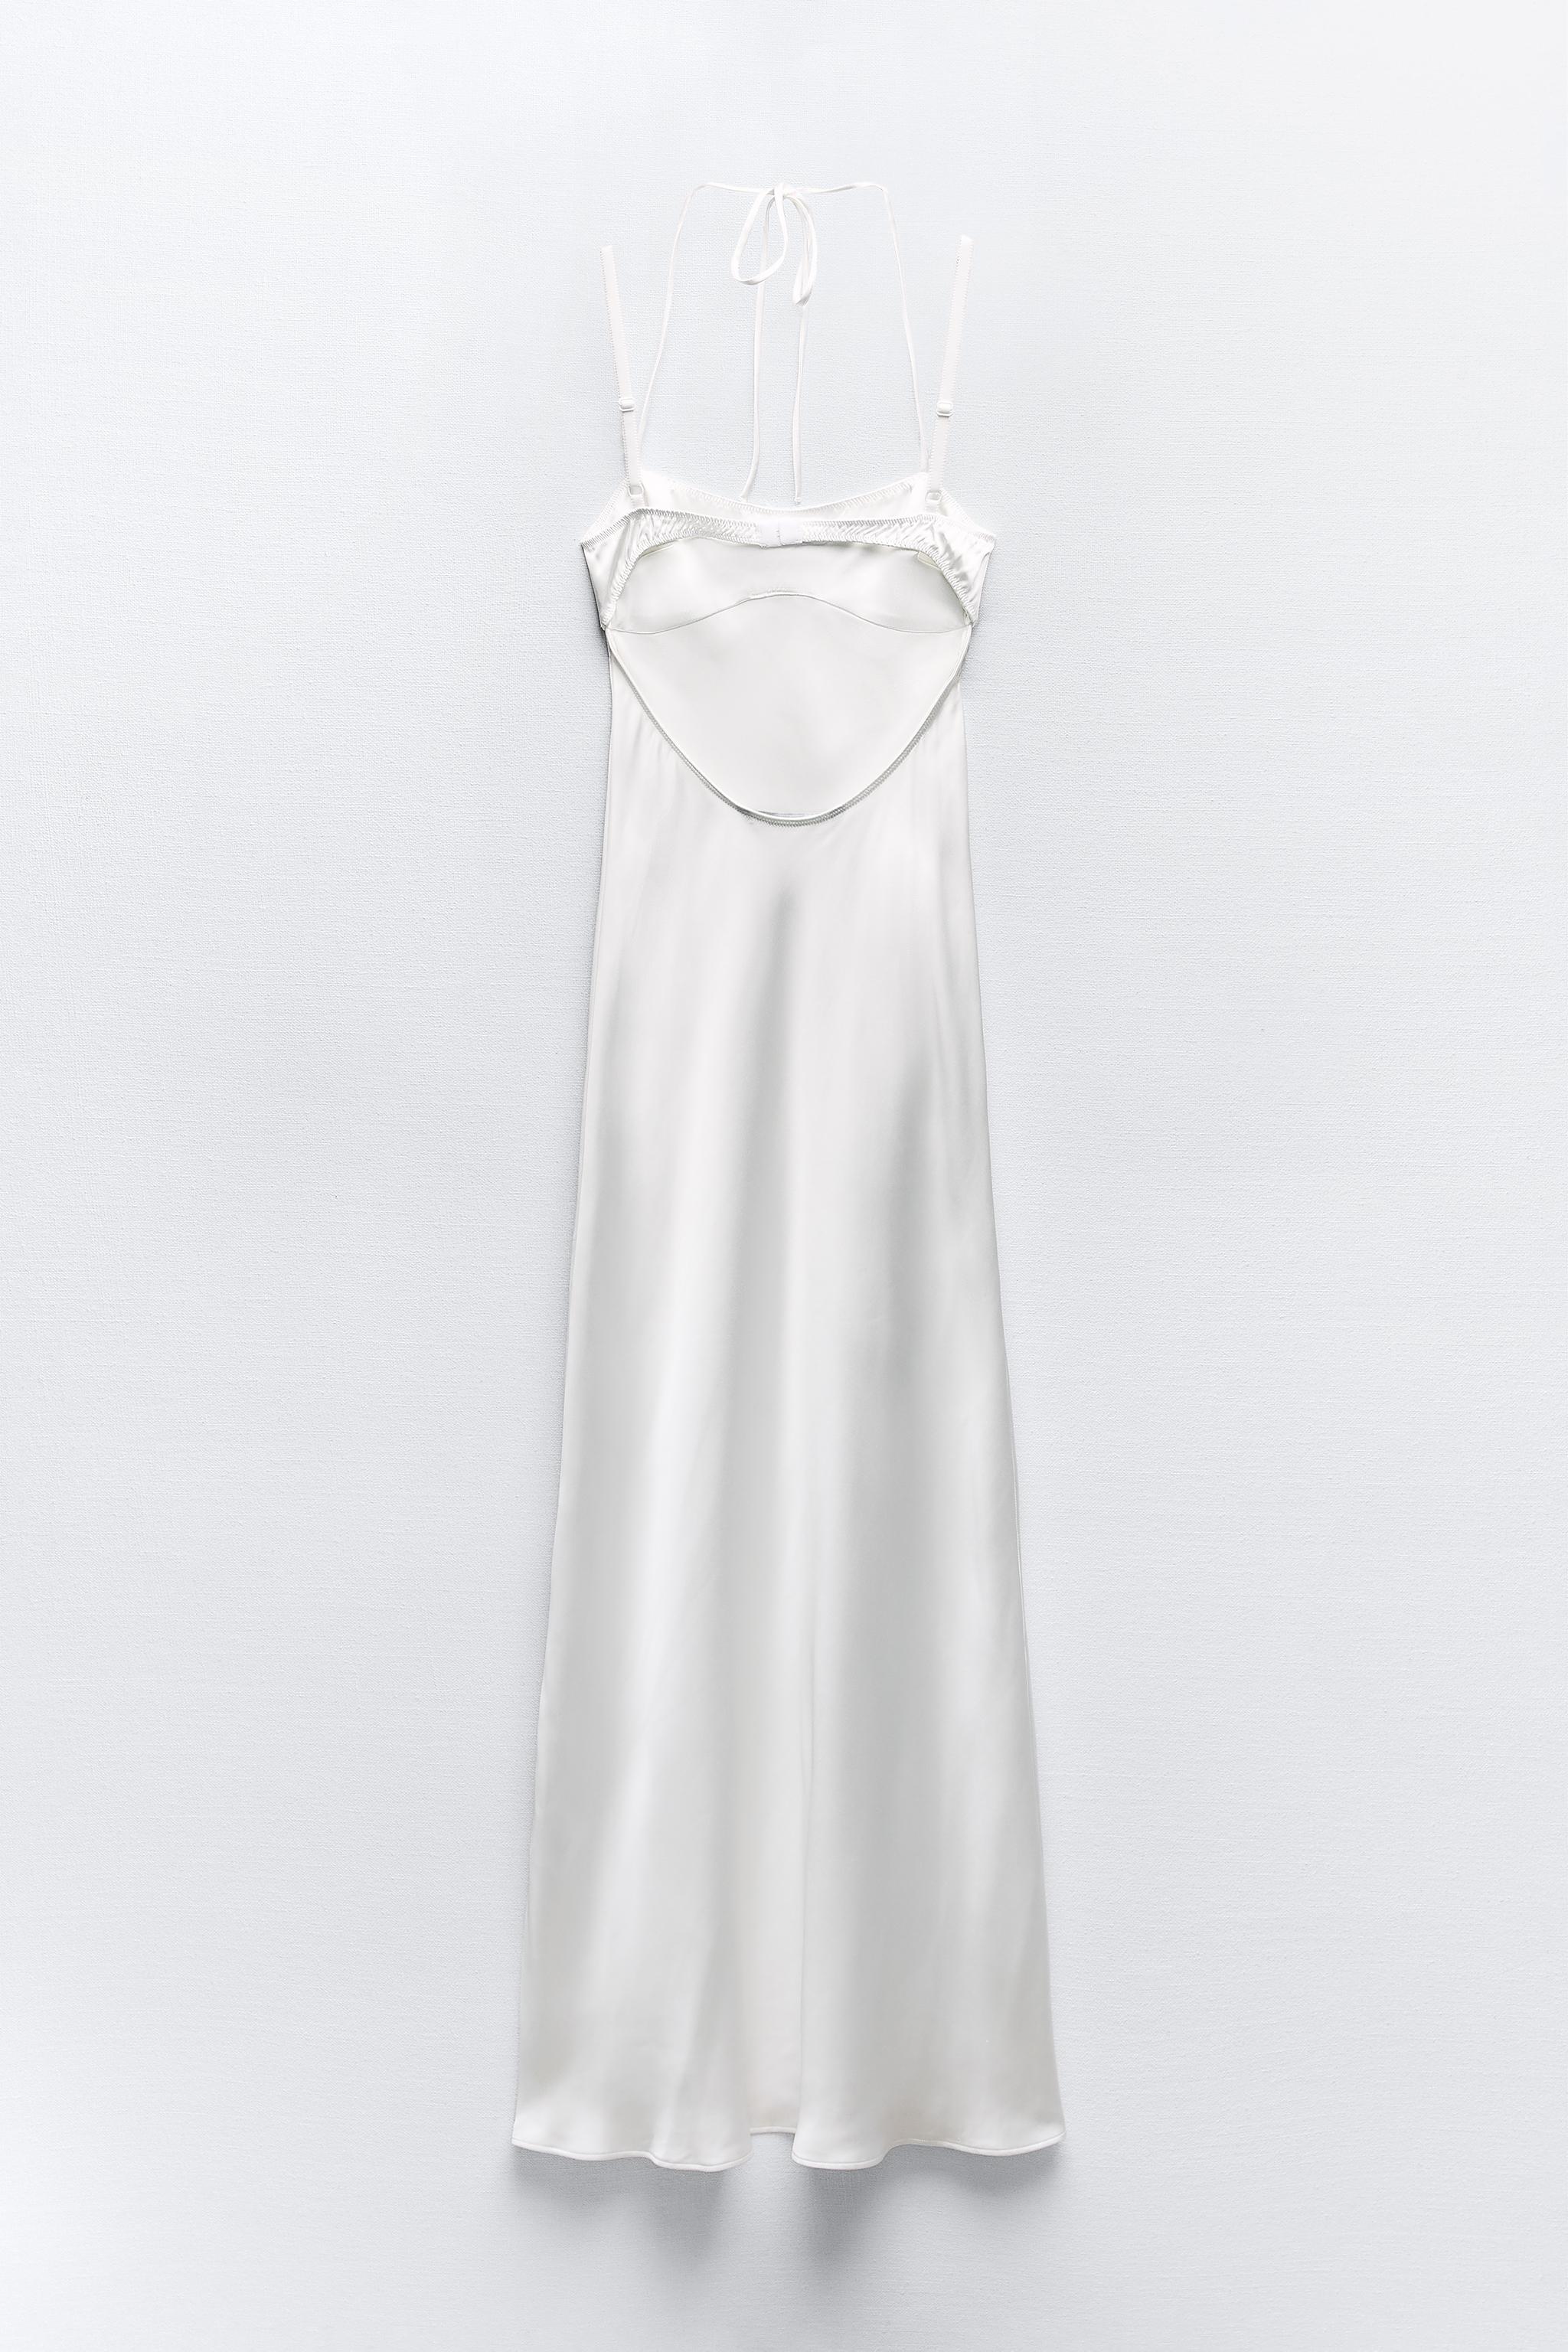 Zara SATIN EFFECT CORSET DRESS  White slip dress, Satin corset dress, Dress